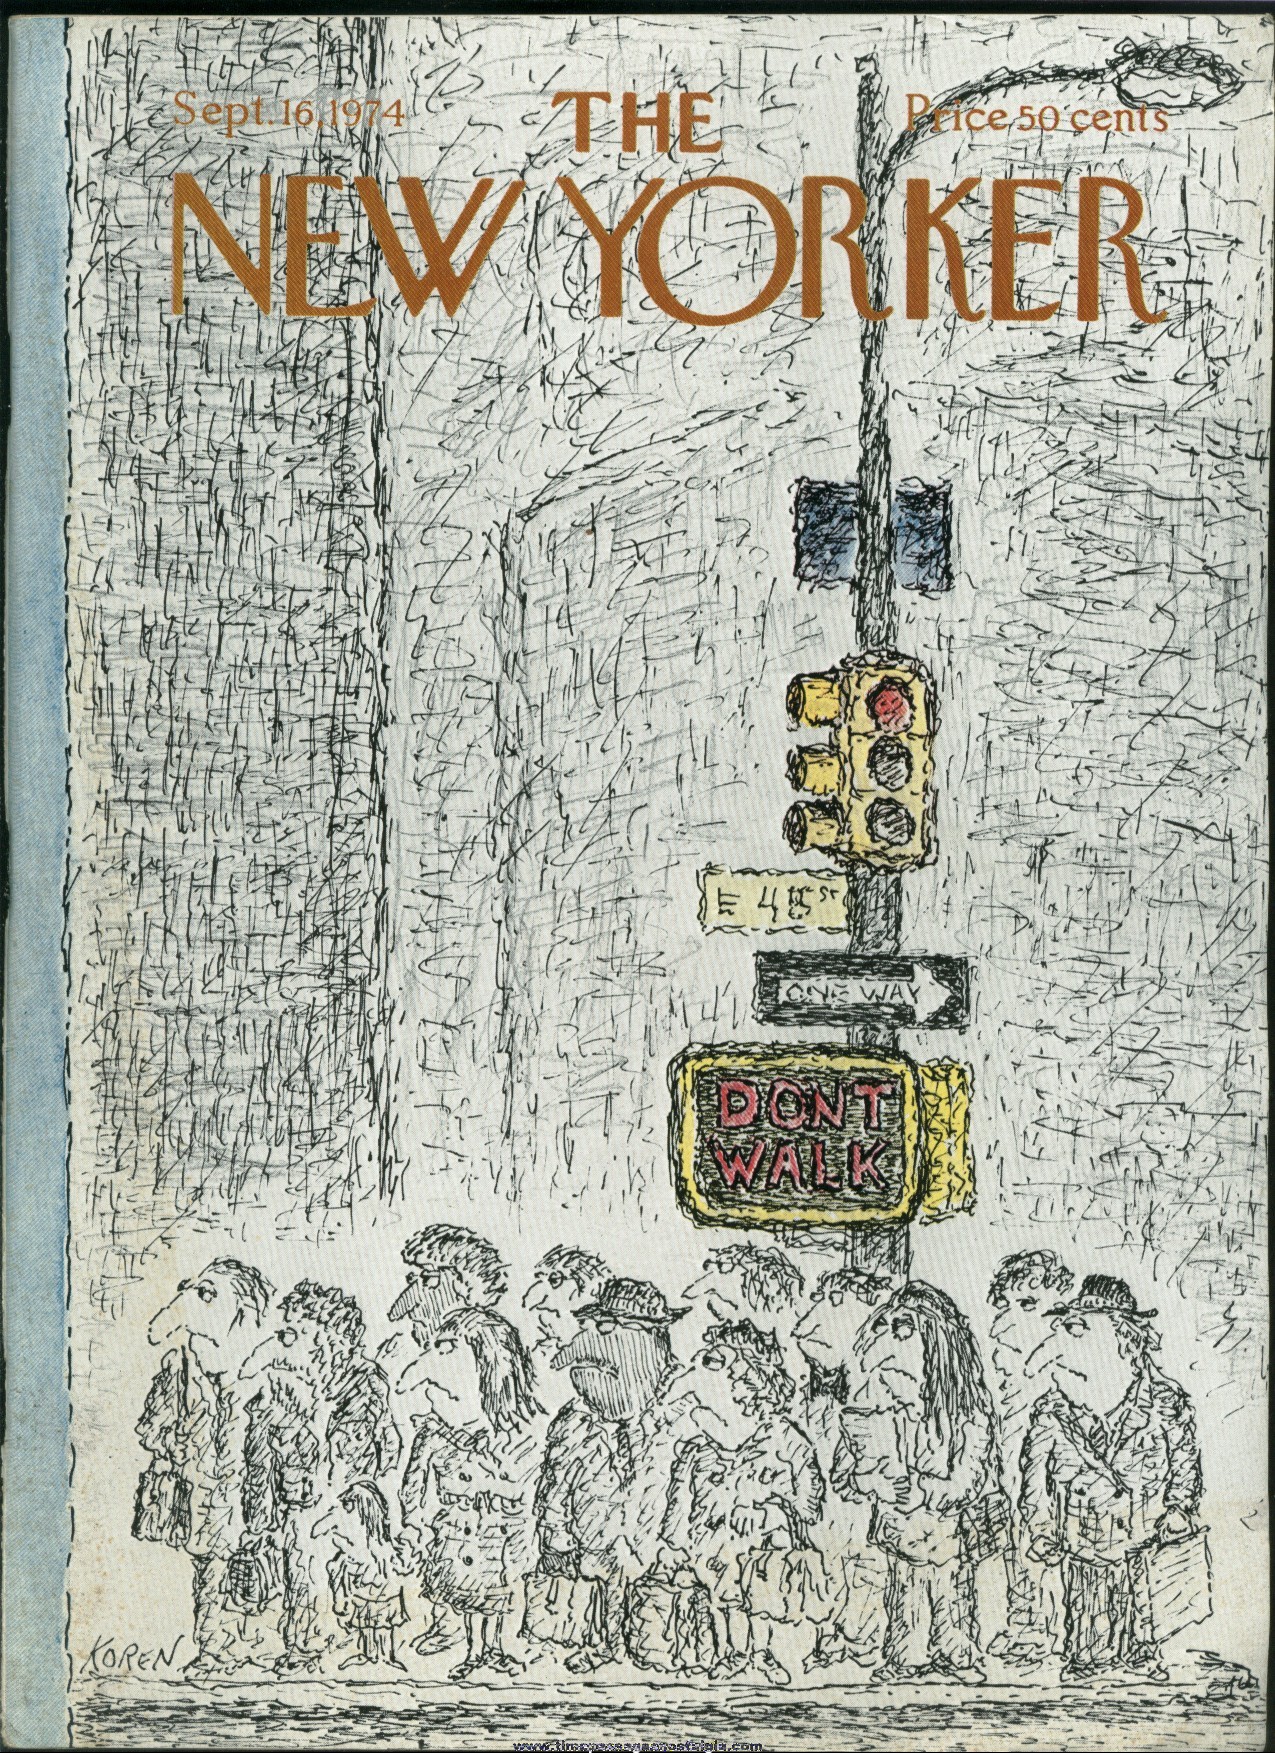 New Yorker Magazine - September 16, 1974 - Cover by Edward Koren